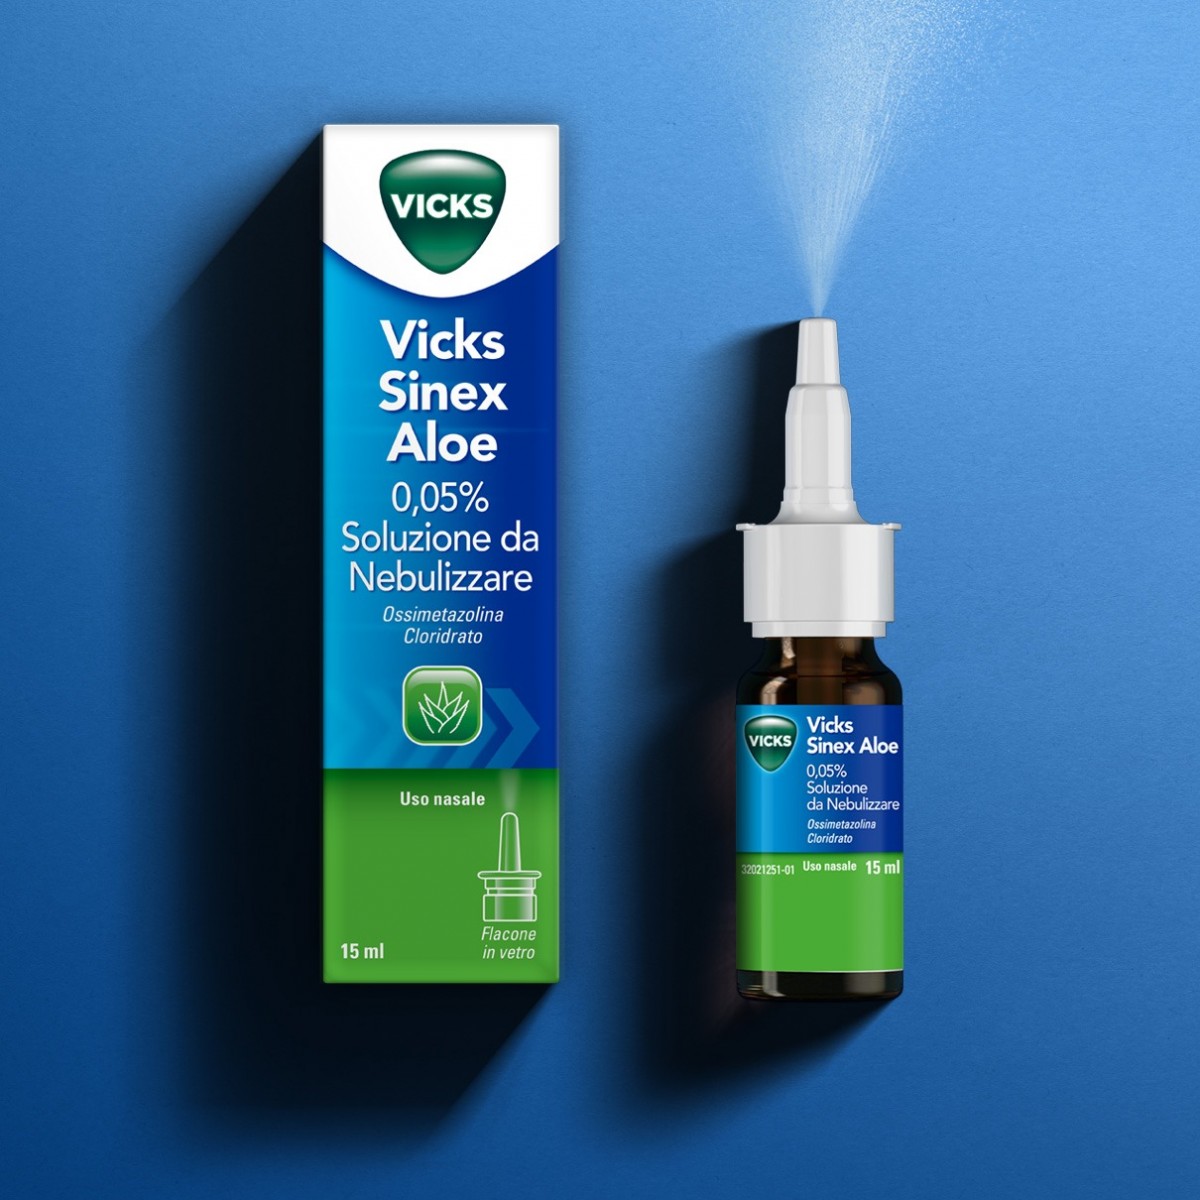 Vicks Sinex Aloe 0,05% Soluzione da Nebulizzare 15ml